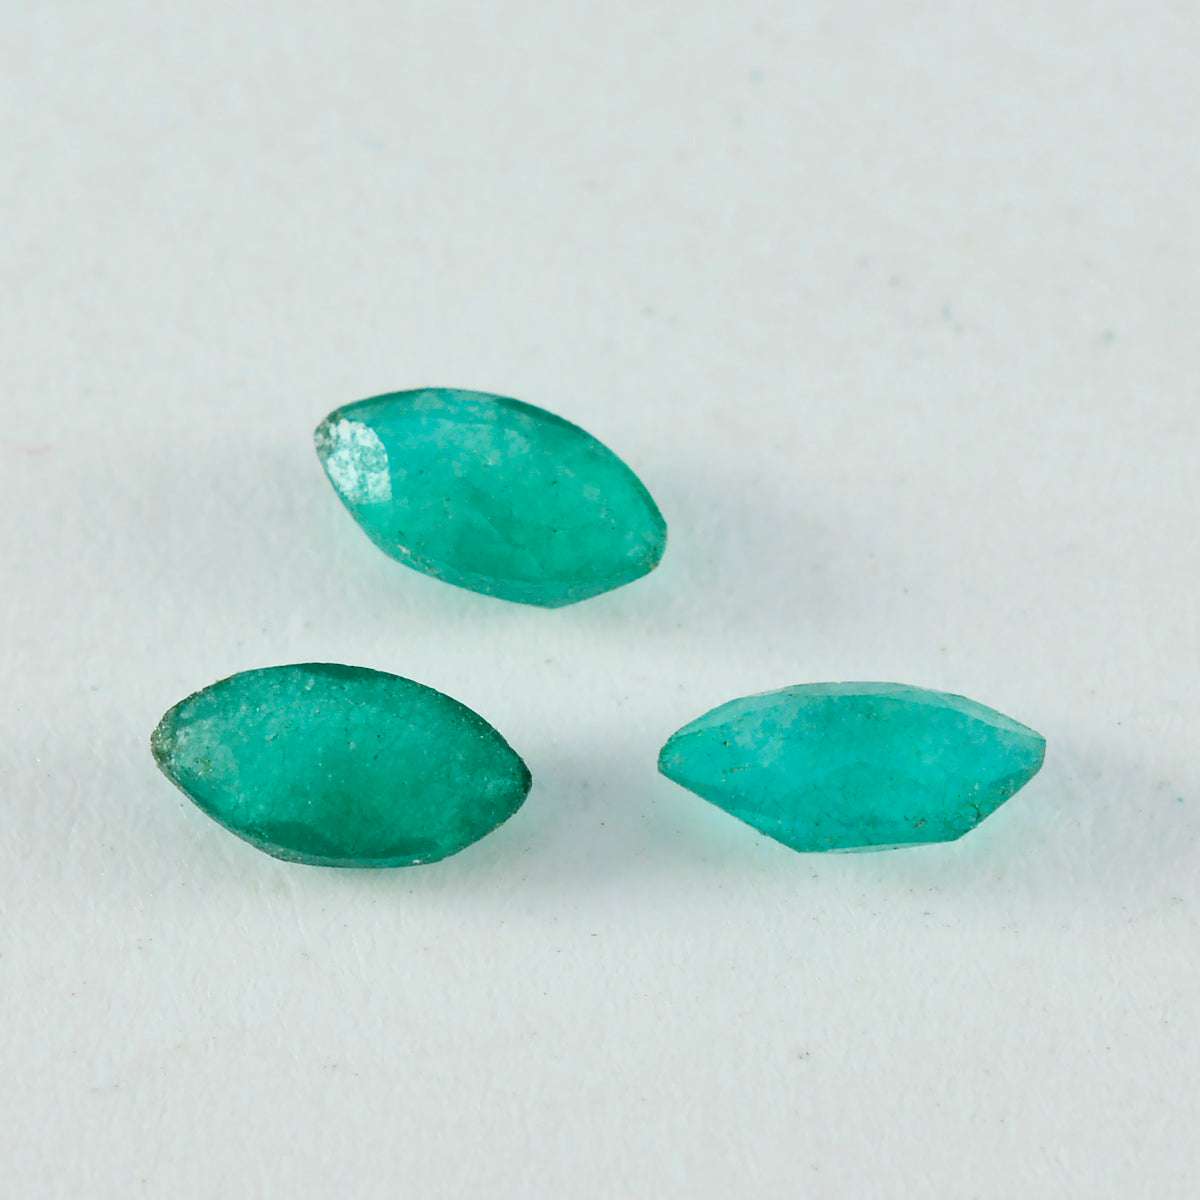 riyogems 1 шт. настоящая зеленая яшма граненая 6x12 мм в форме маркизы красивый качественный драгоценный камень